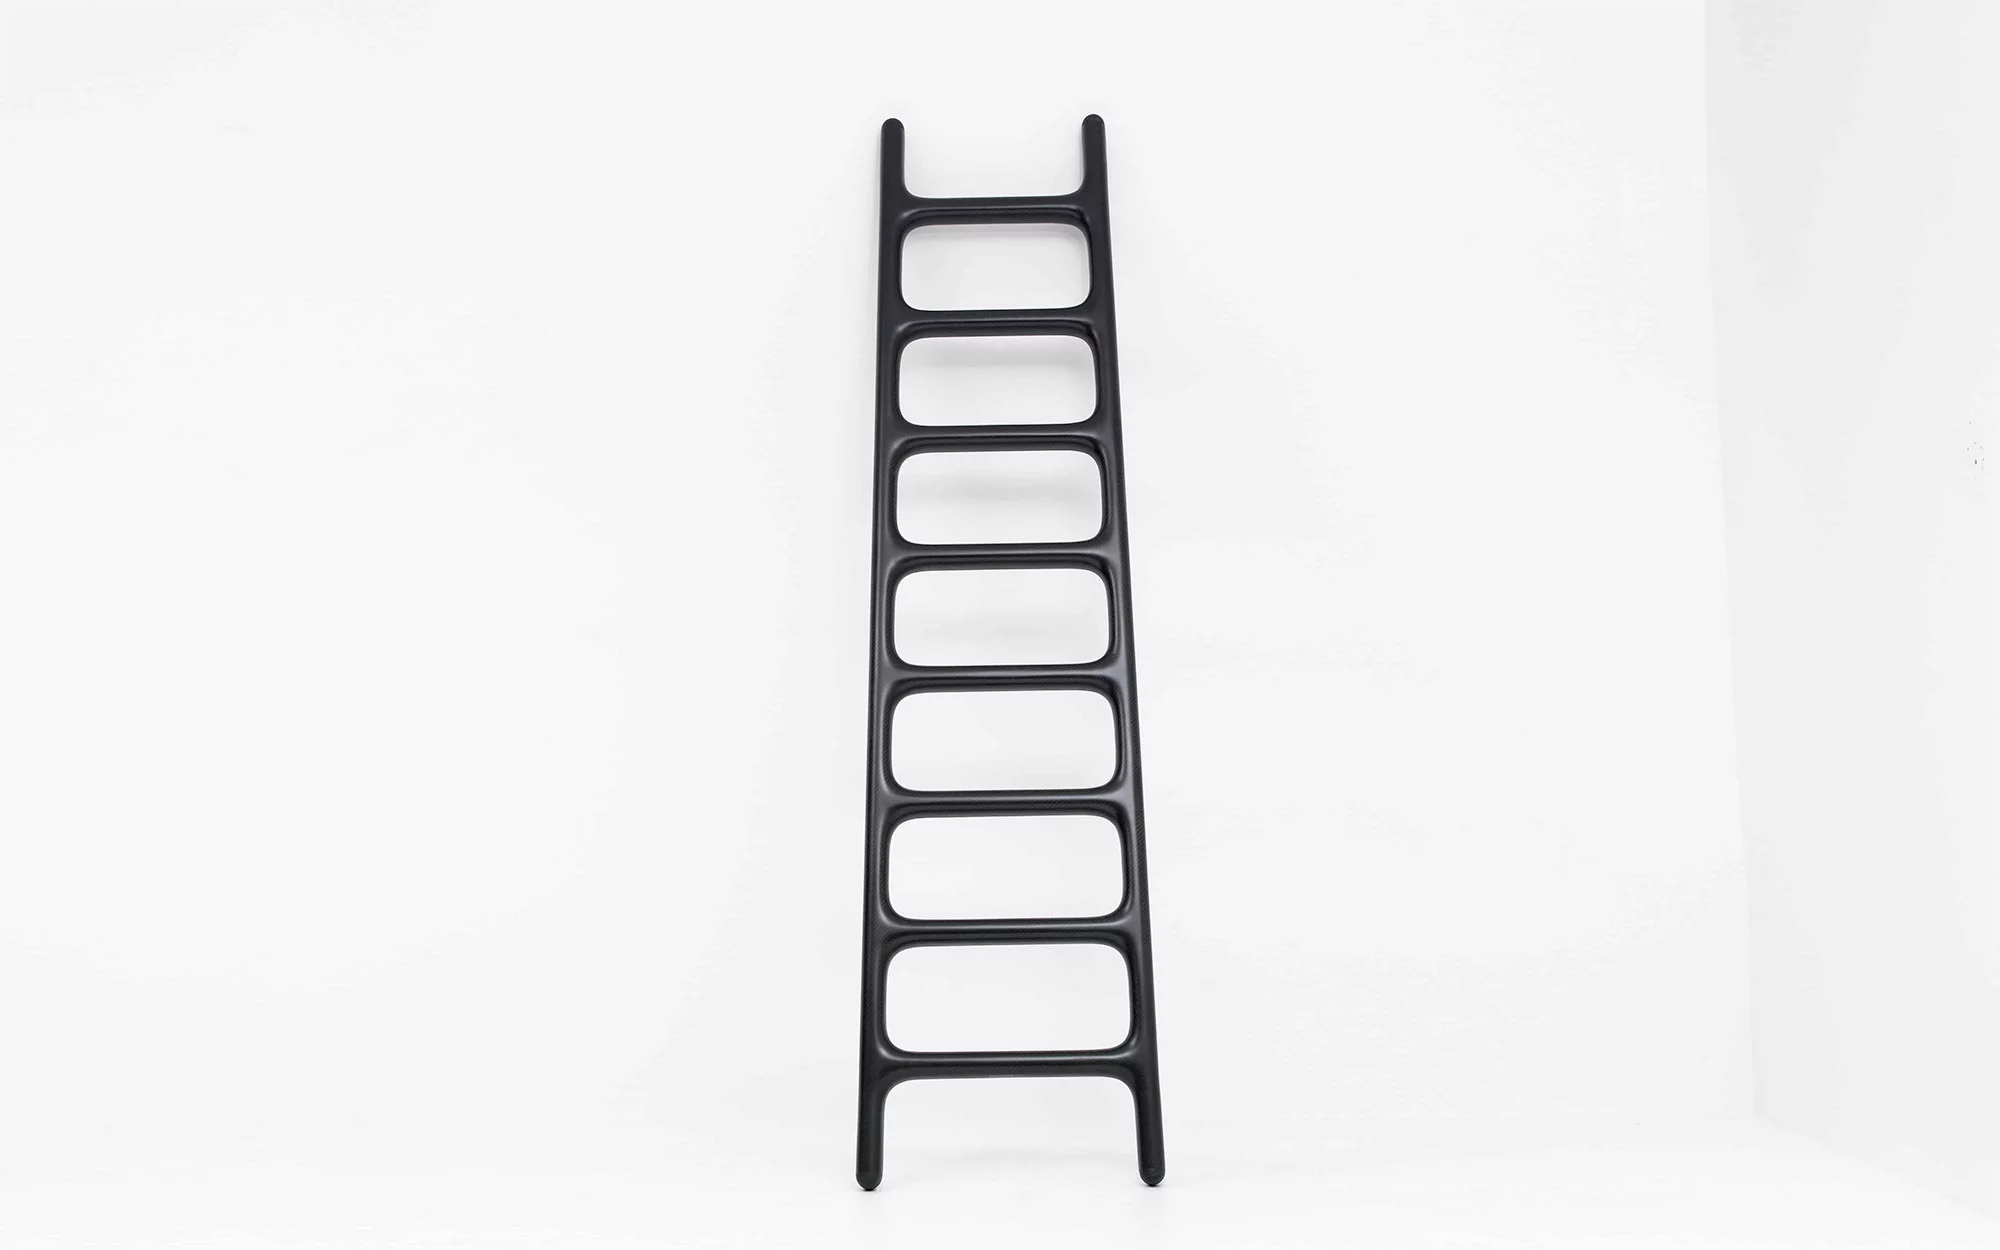 Carbon Ladder - Marc Newson - Storage - Galerie kreo